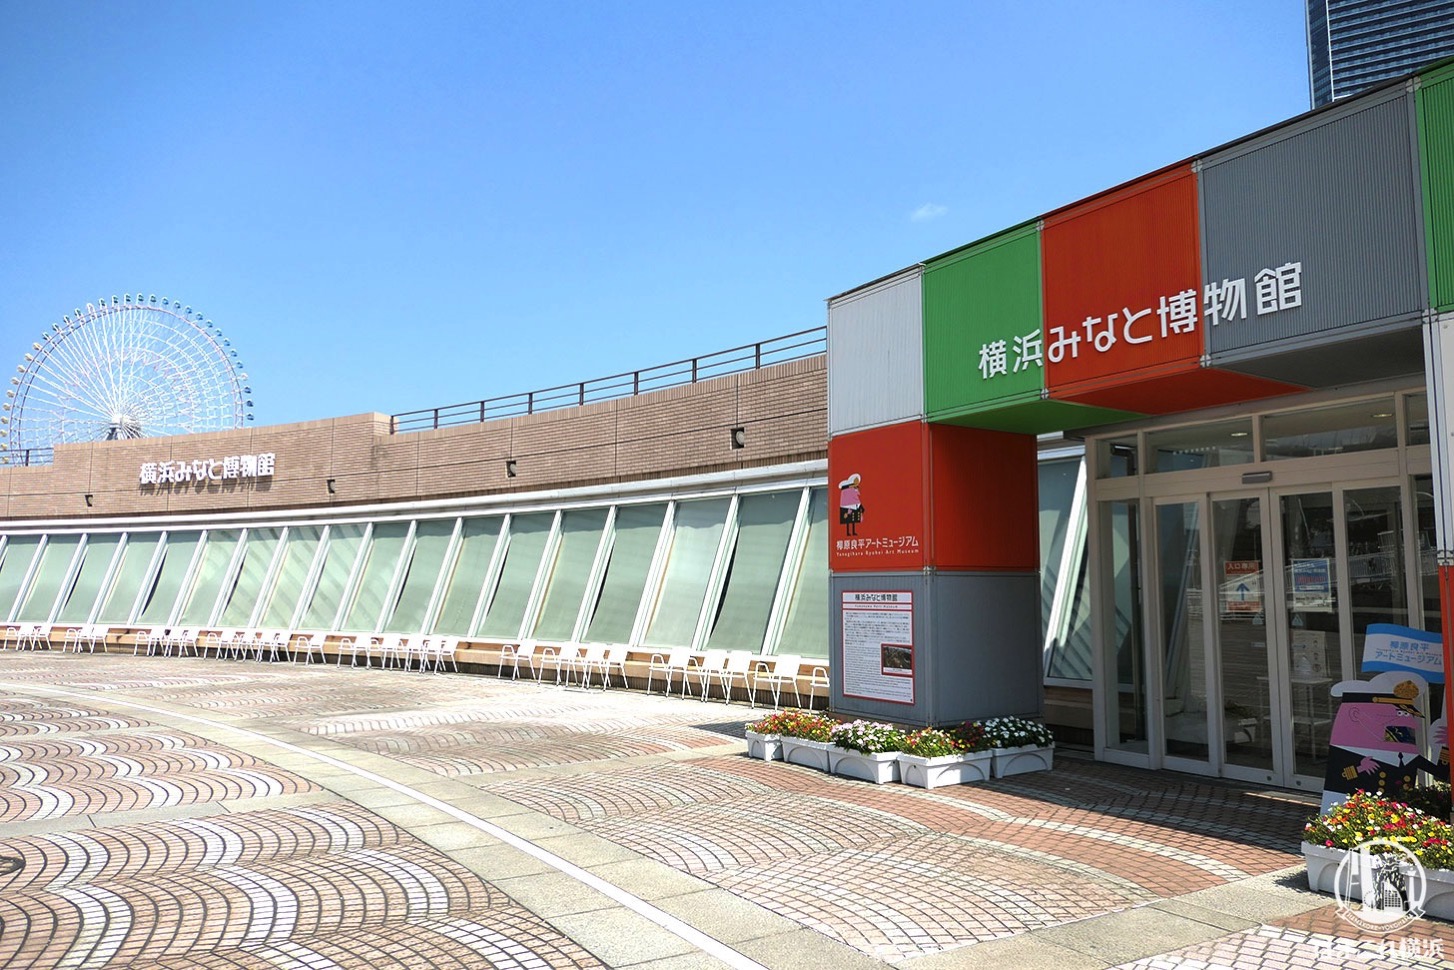 横浜みなと博物館、リニューアル工事に伴い2021年6月7日より休館